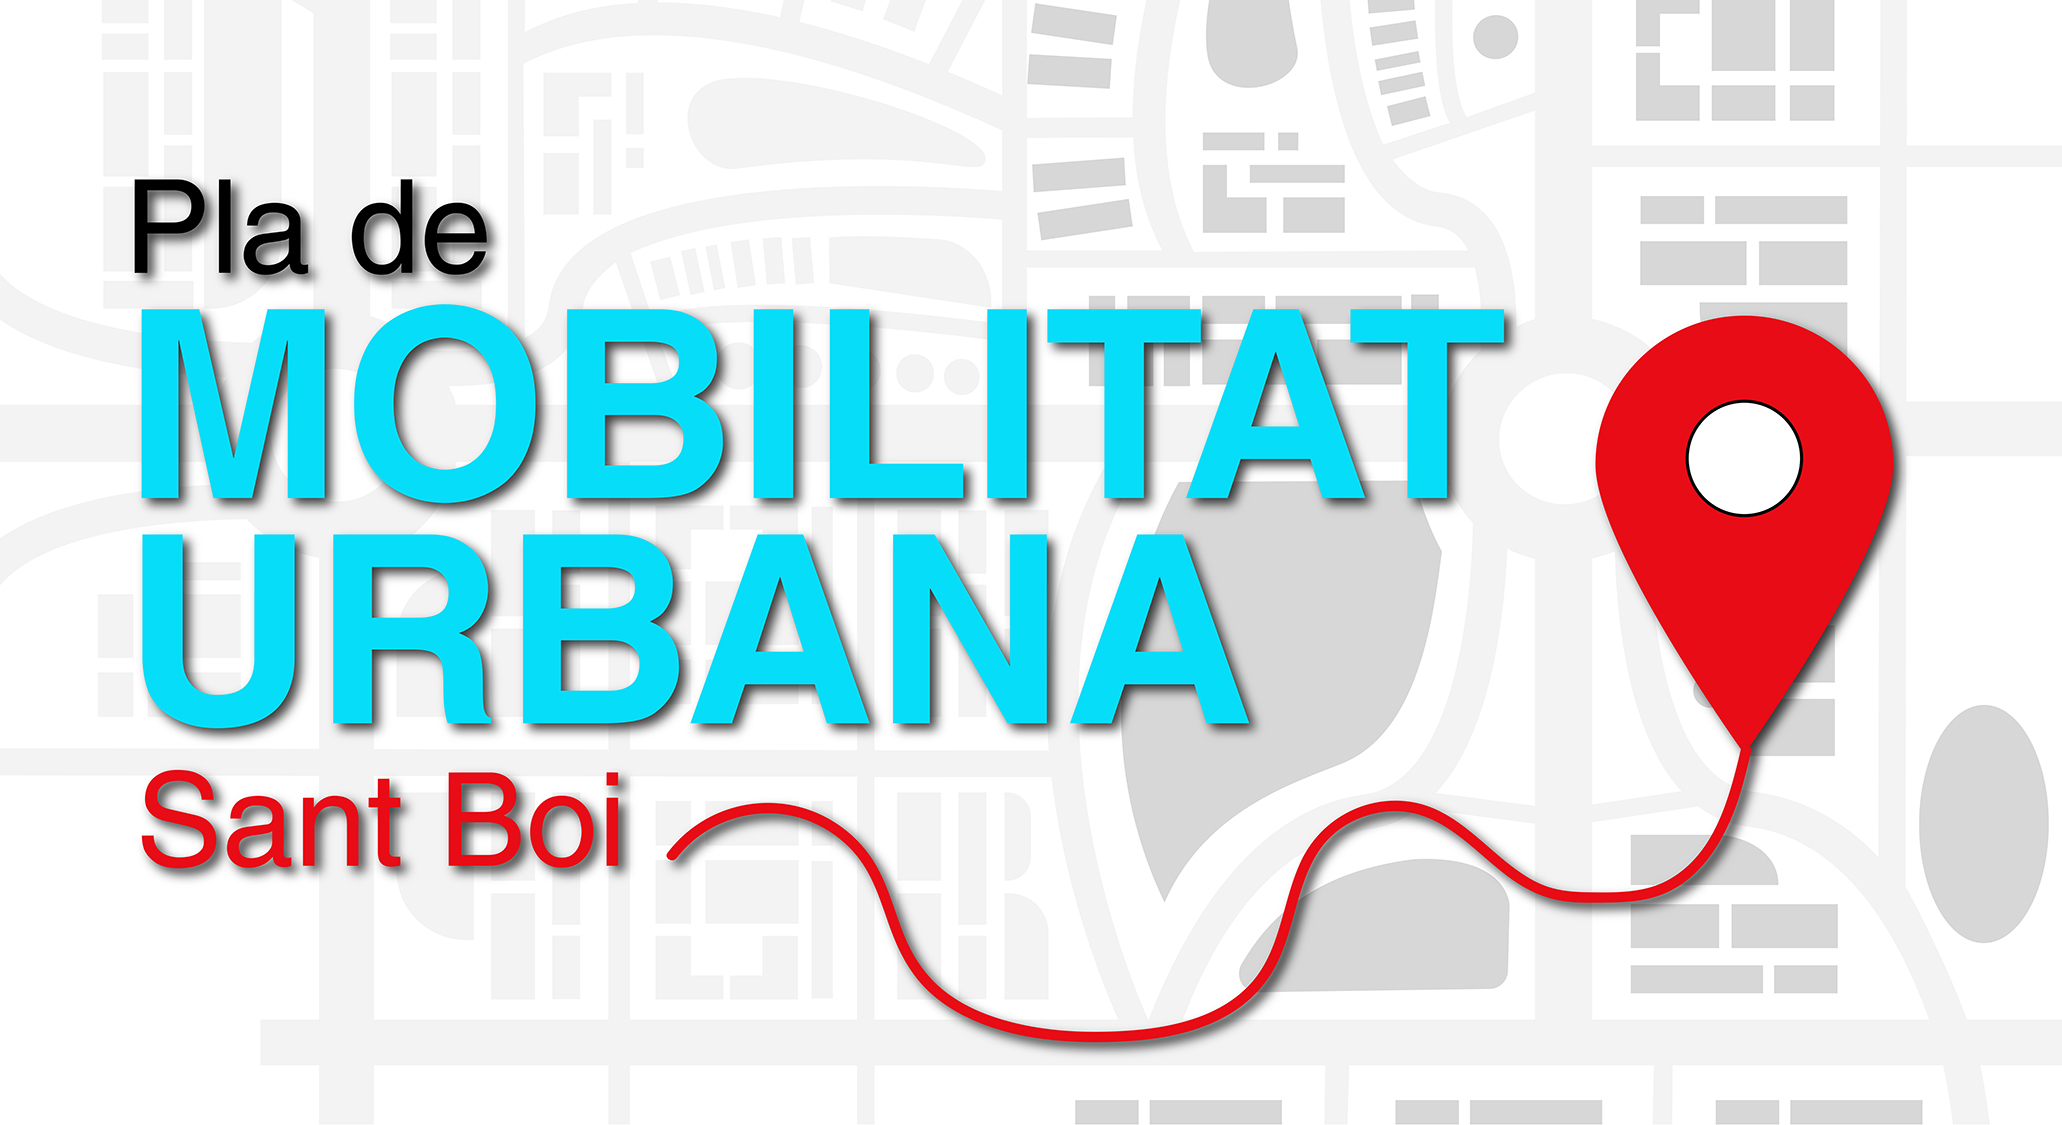 Pla de Mobilitat Urbana de Sant Boi